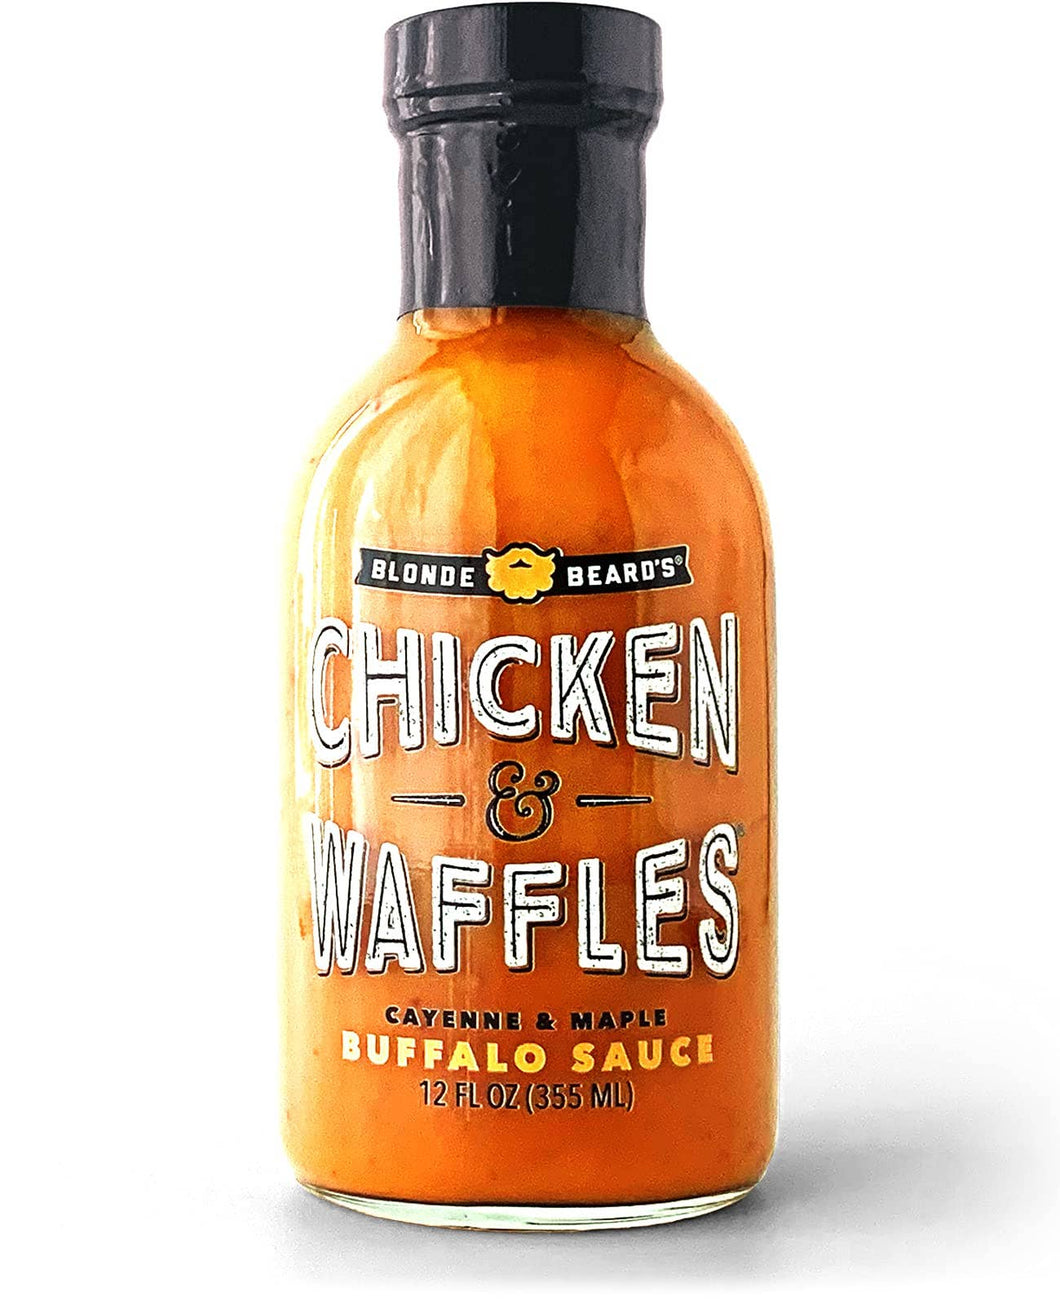 Blonde Beard's Buffalo Sauce - Chicken and Waffles Buffalo Sauce